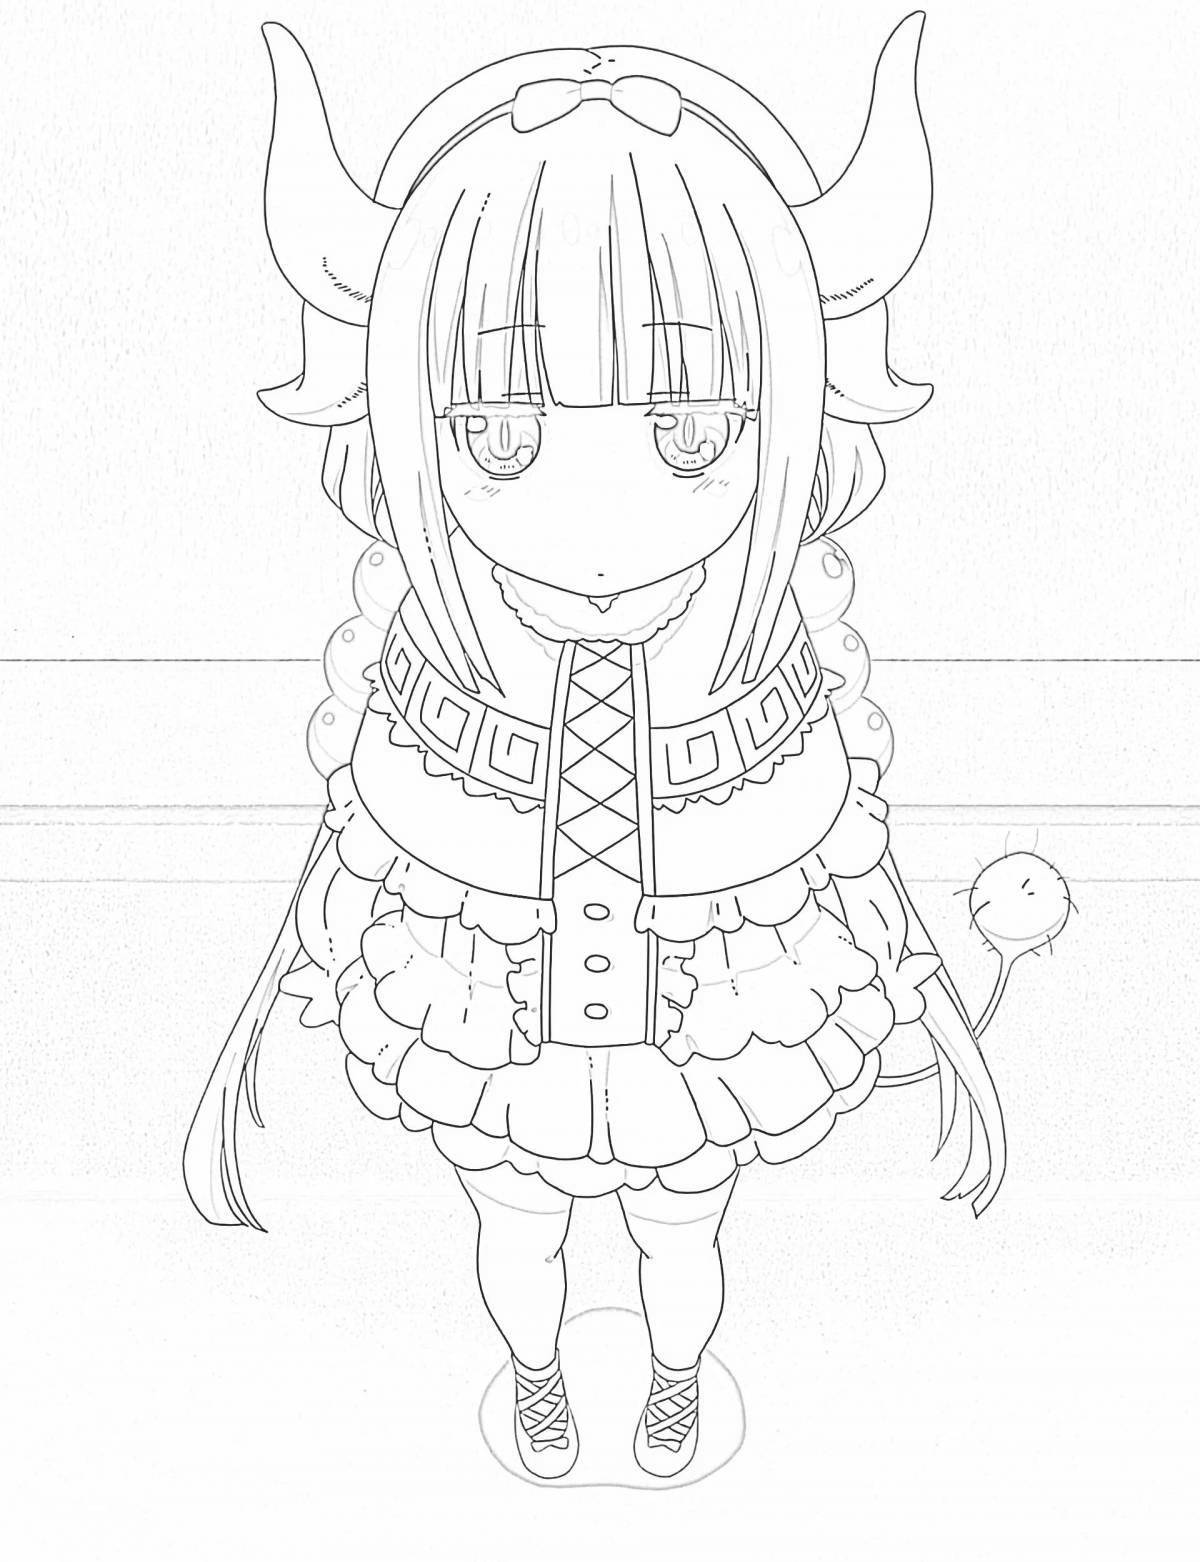 Kobayashi's funny anime maid dragon